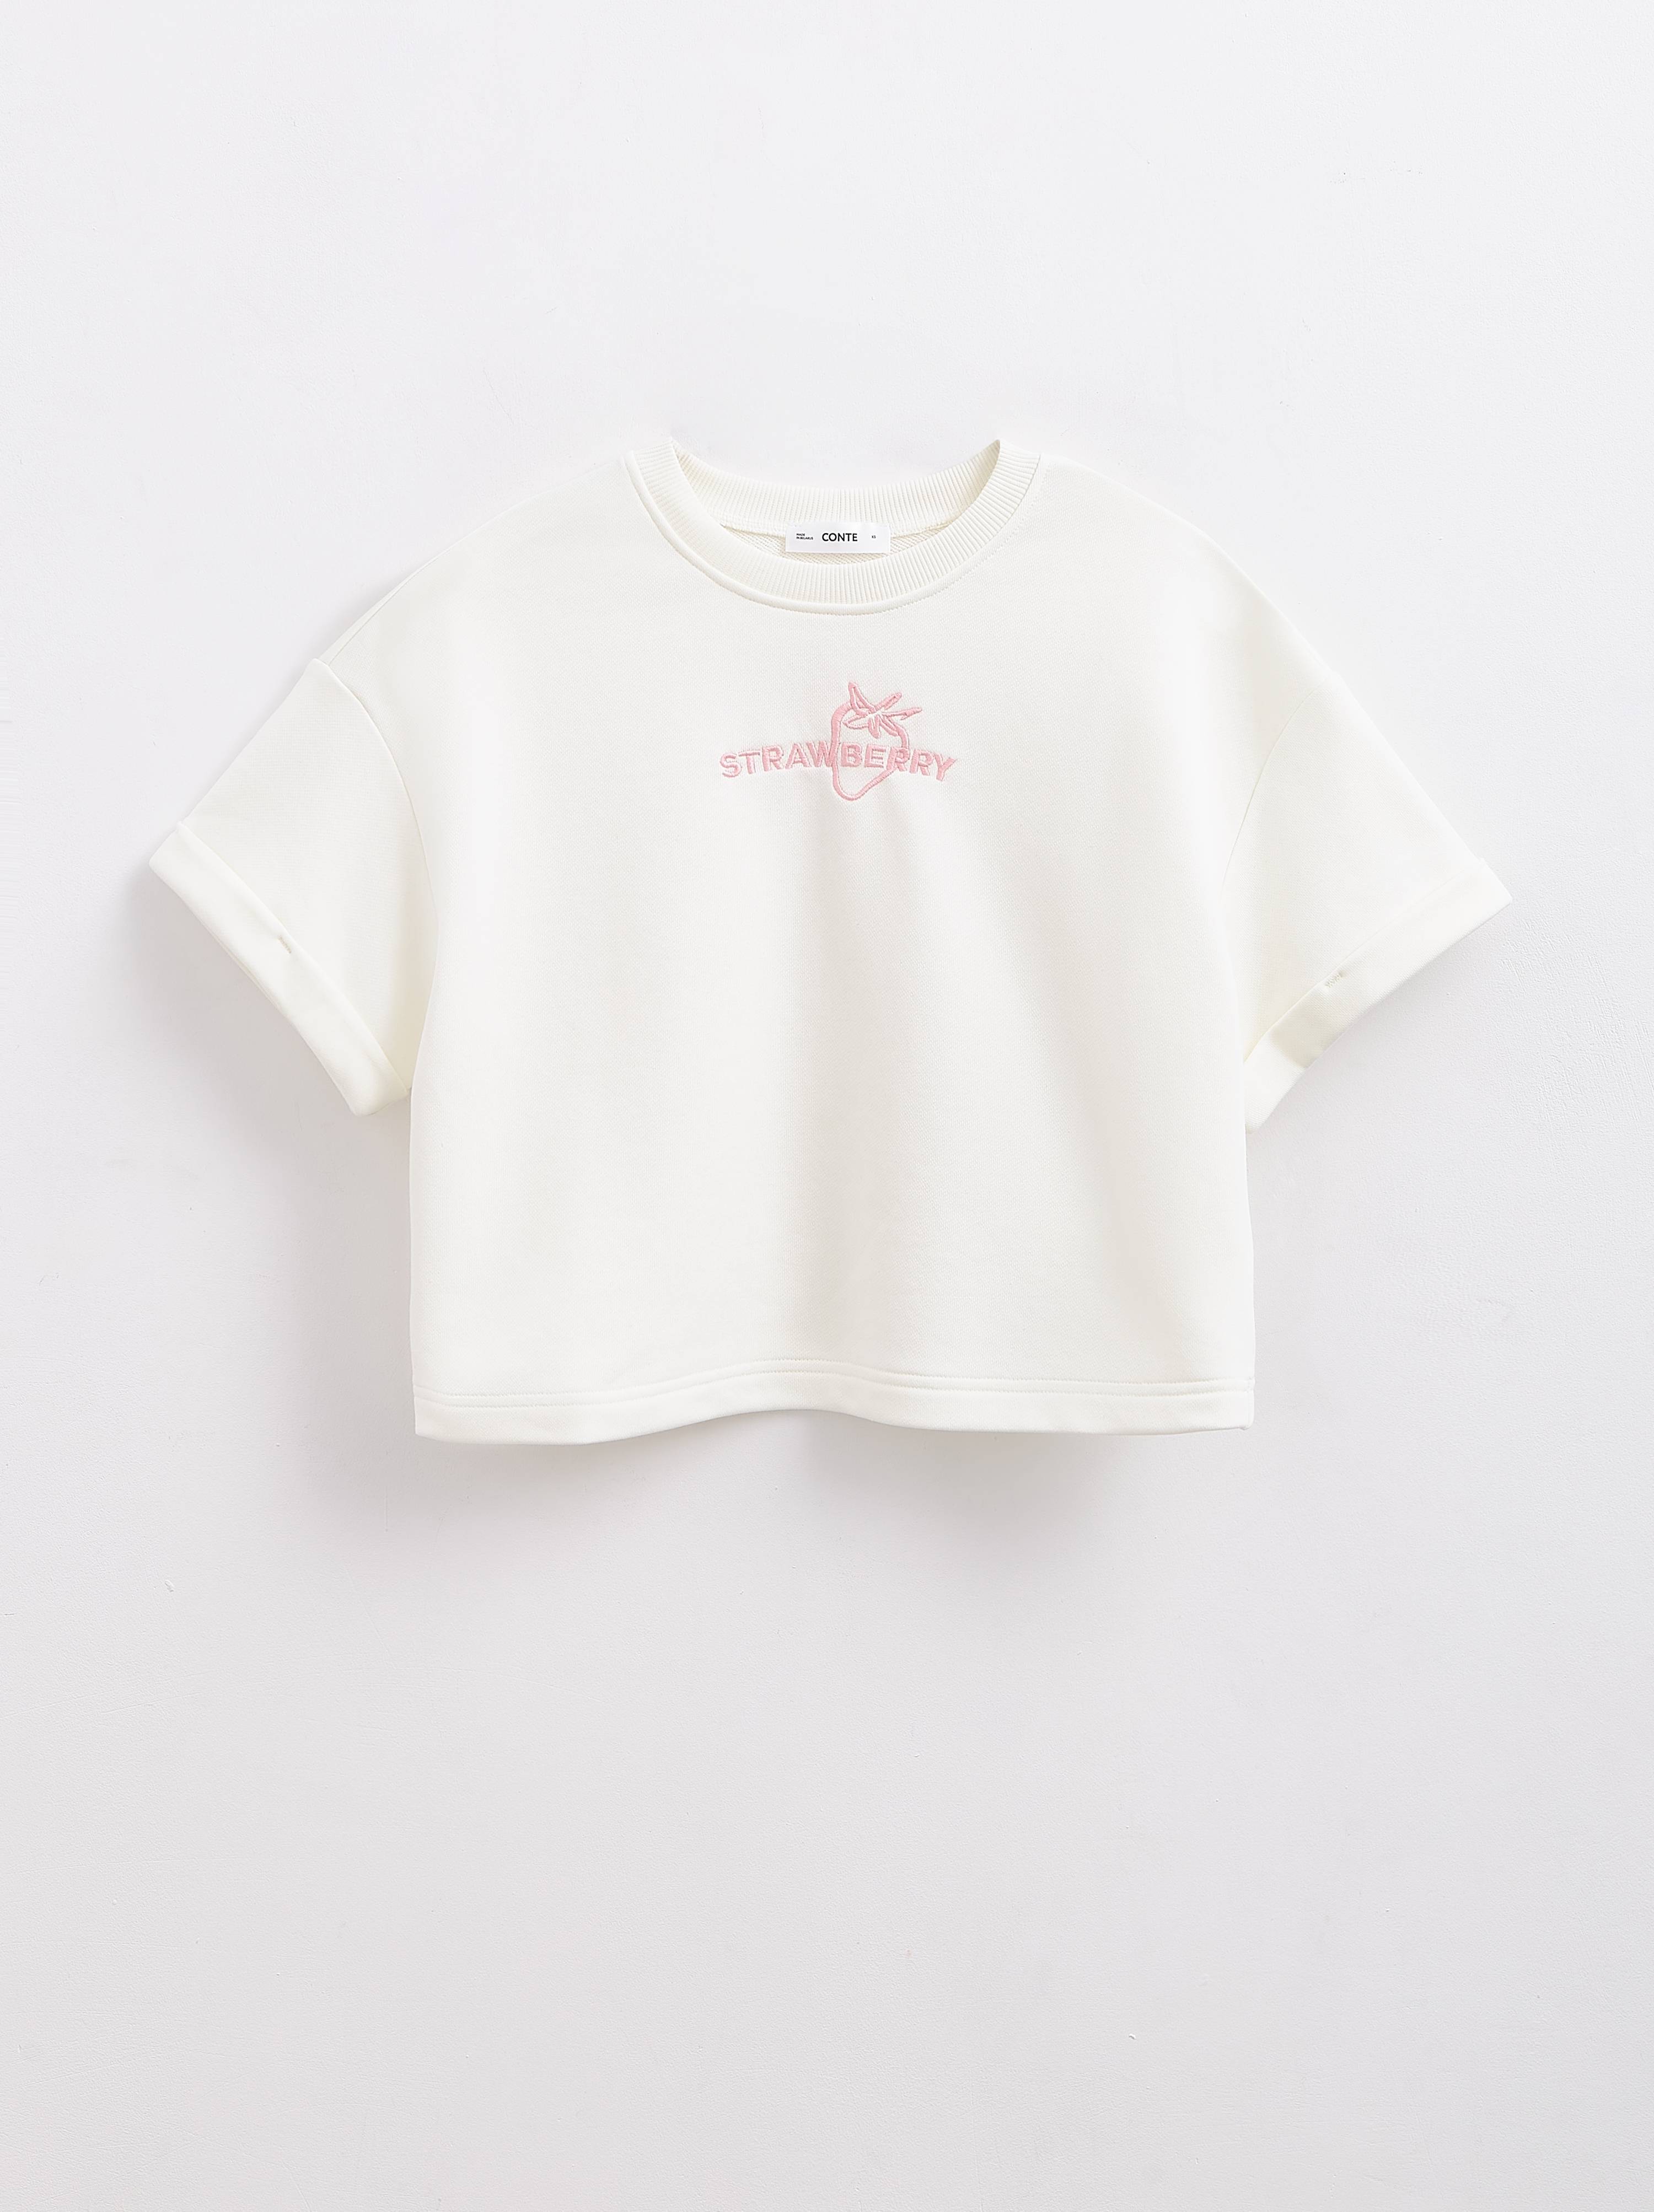 Укороченная футболка из футера с вышивкой «Strawberry» LD 2223 Conte ⭐️, цвет off-white, размер 170-84/xs - фото 1